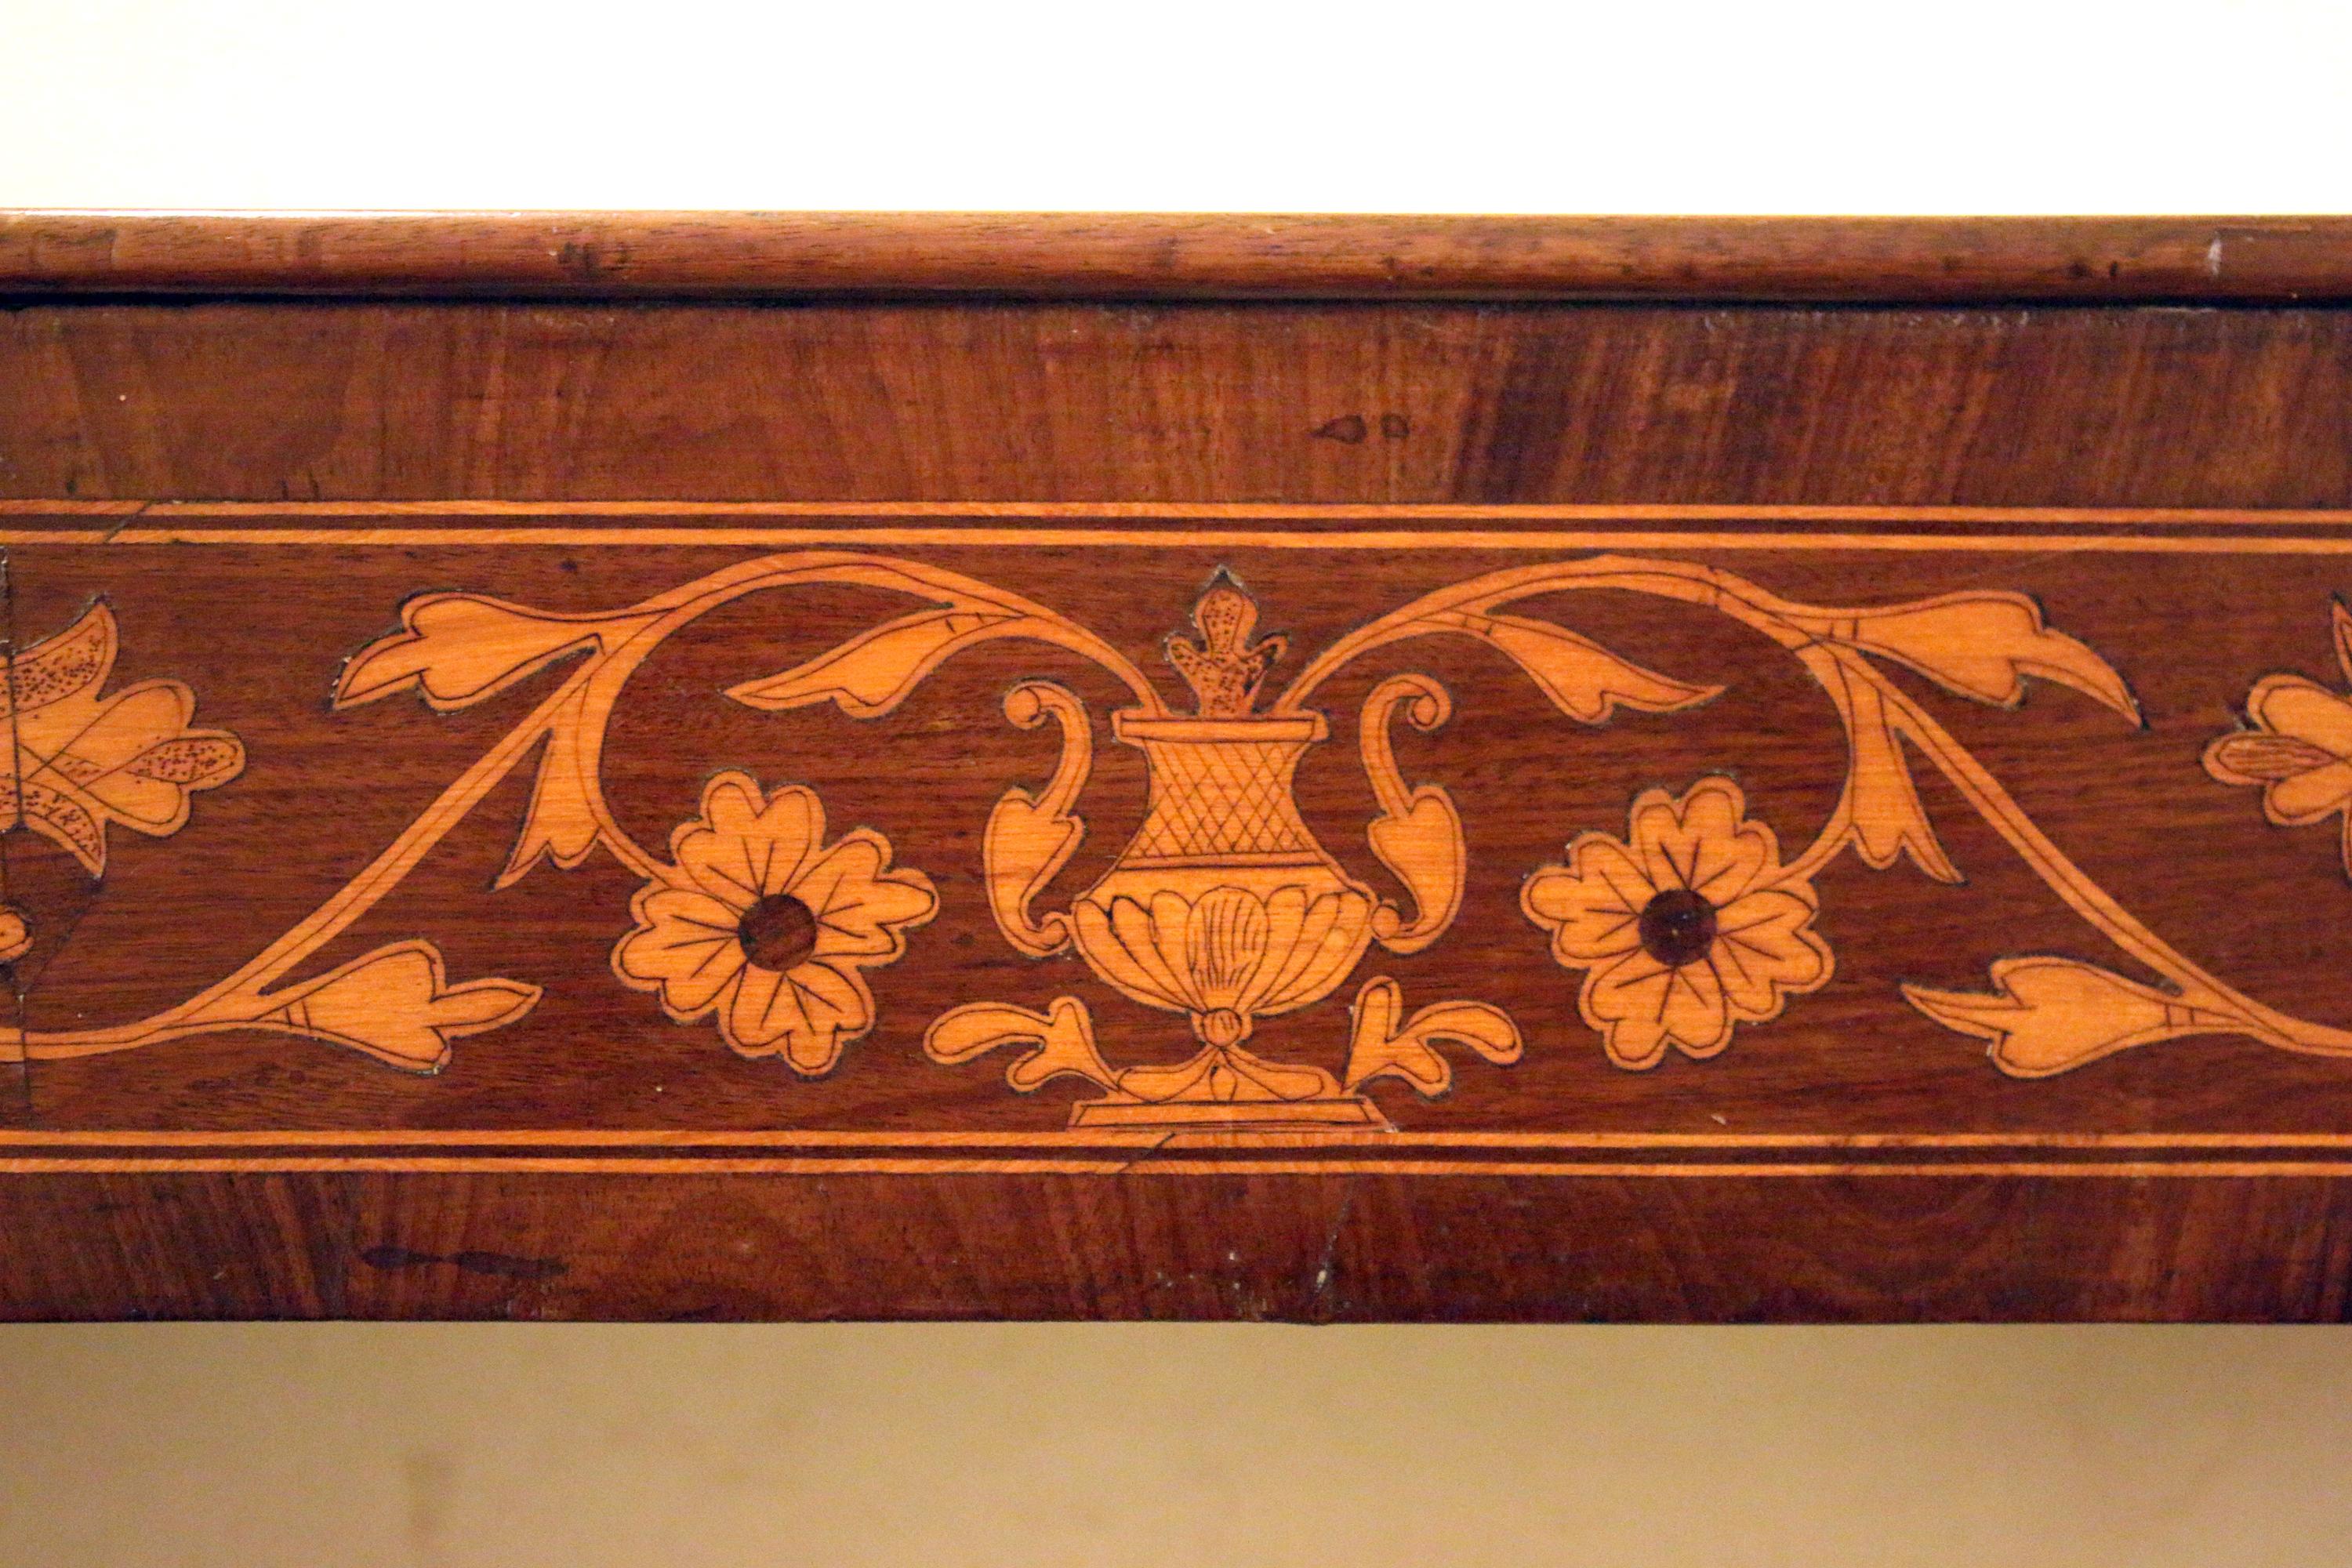 Belle console Regency anglaise du XIXe siècle en acajou avec une frise en bois de satin. Les incrustations complexes, les volutes serpentines, les montures en laiton et les colonnes décoratives en ébène ajoutent à la beauté de cette pièce classique